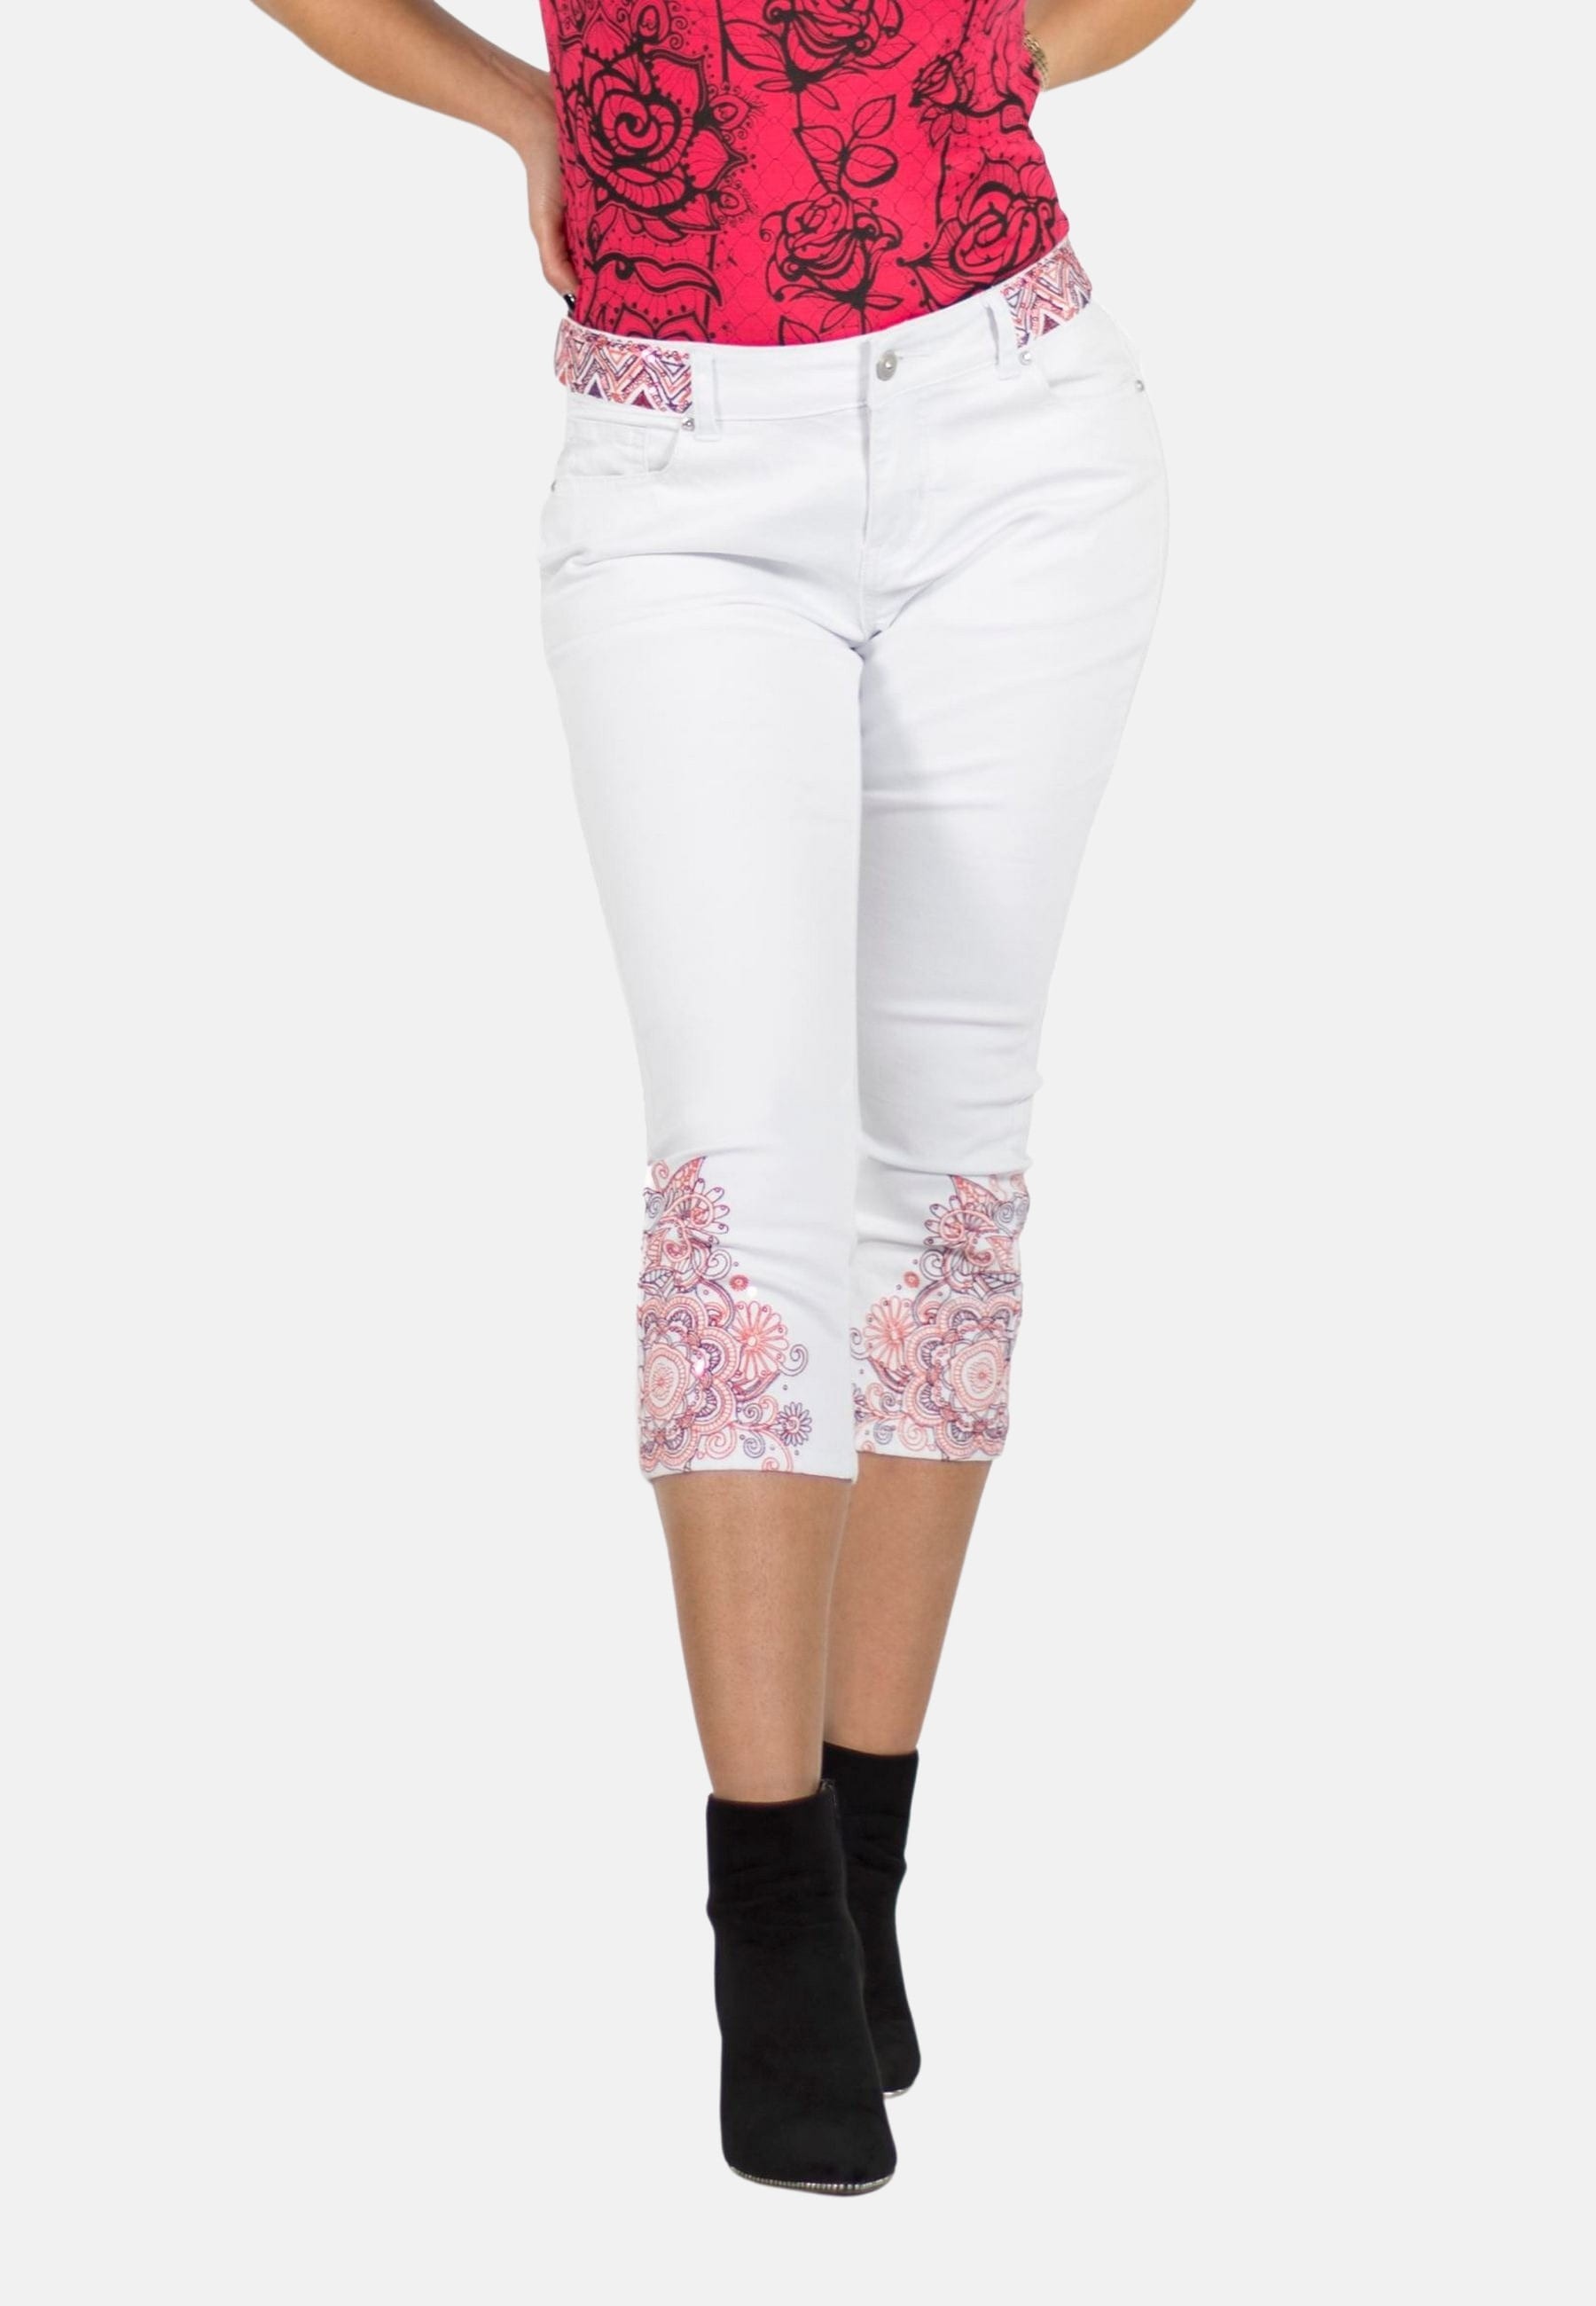 Pantalón corto Pirata bordados de mandalas en el bajo color Blanco para Mujer